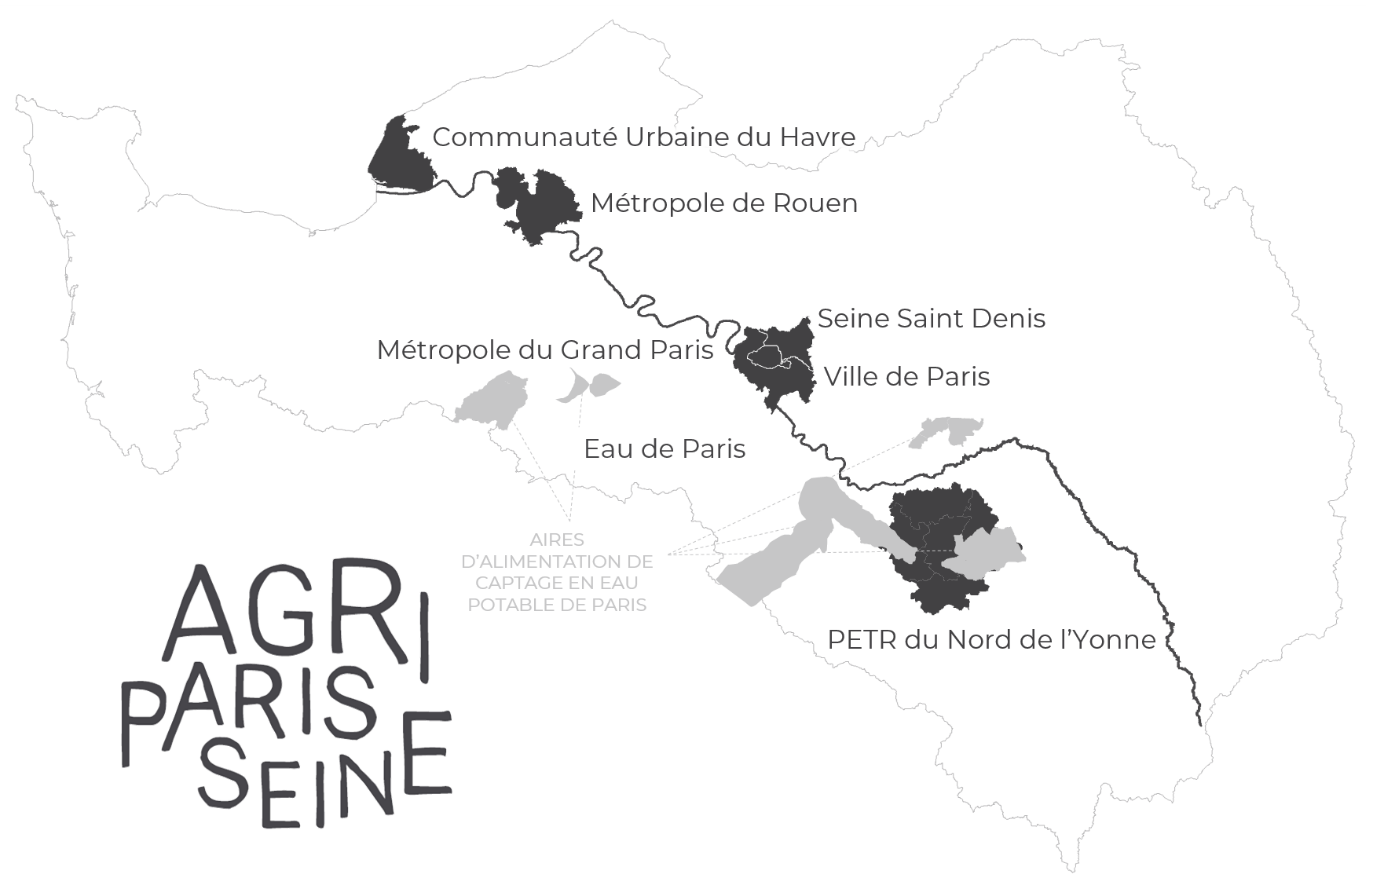 Carte AgriParis Seine.